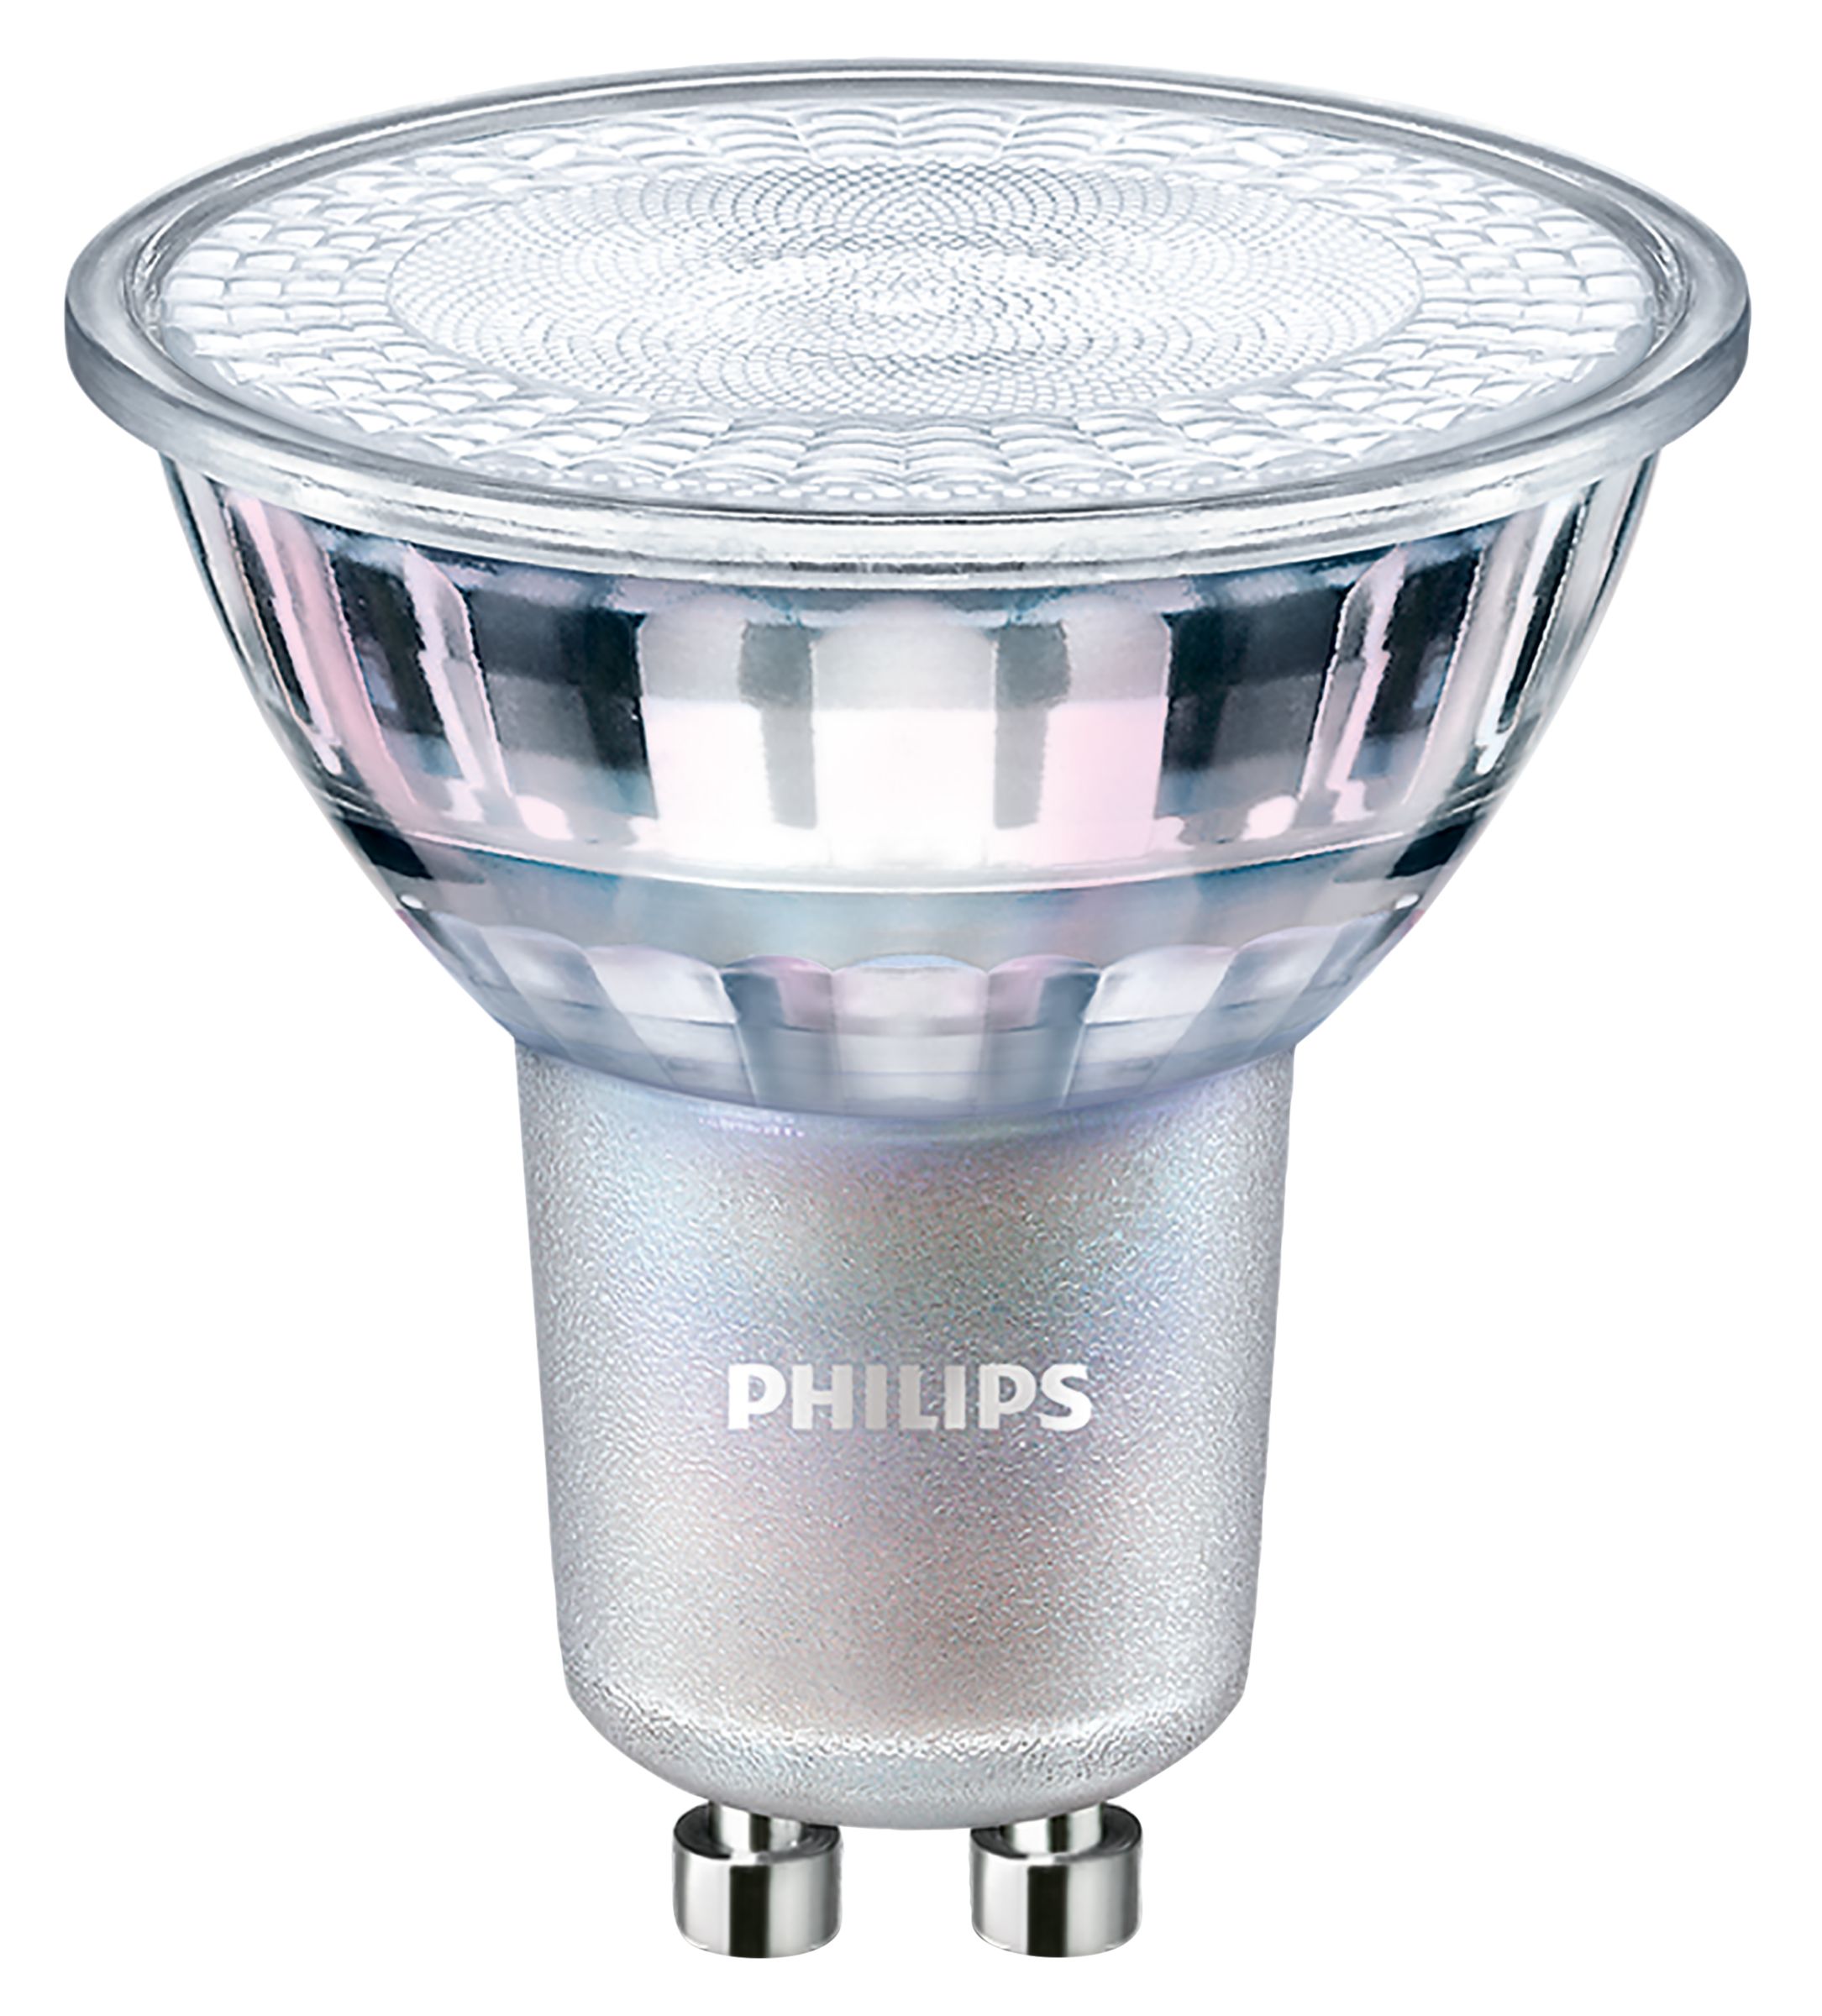 MAS LED spot VLE D 4.9-50W GU10 60D | 929001349302 | Philips lighting